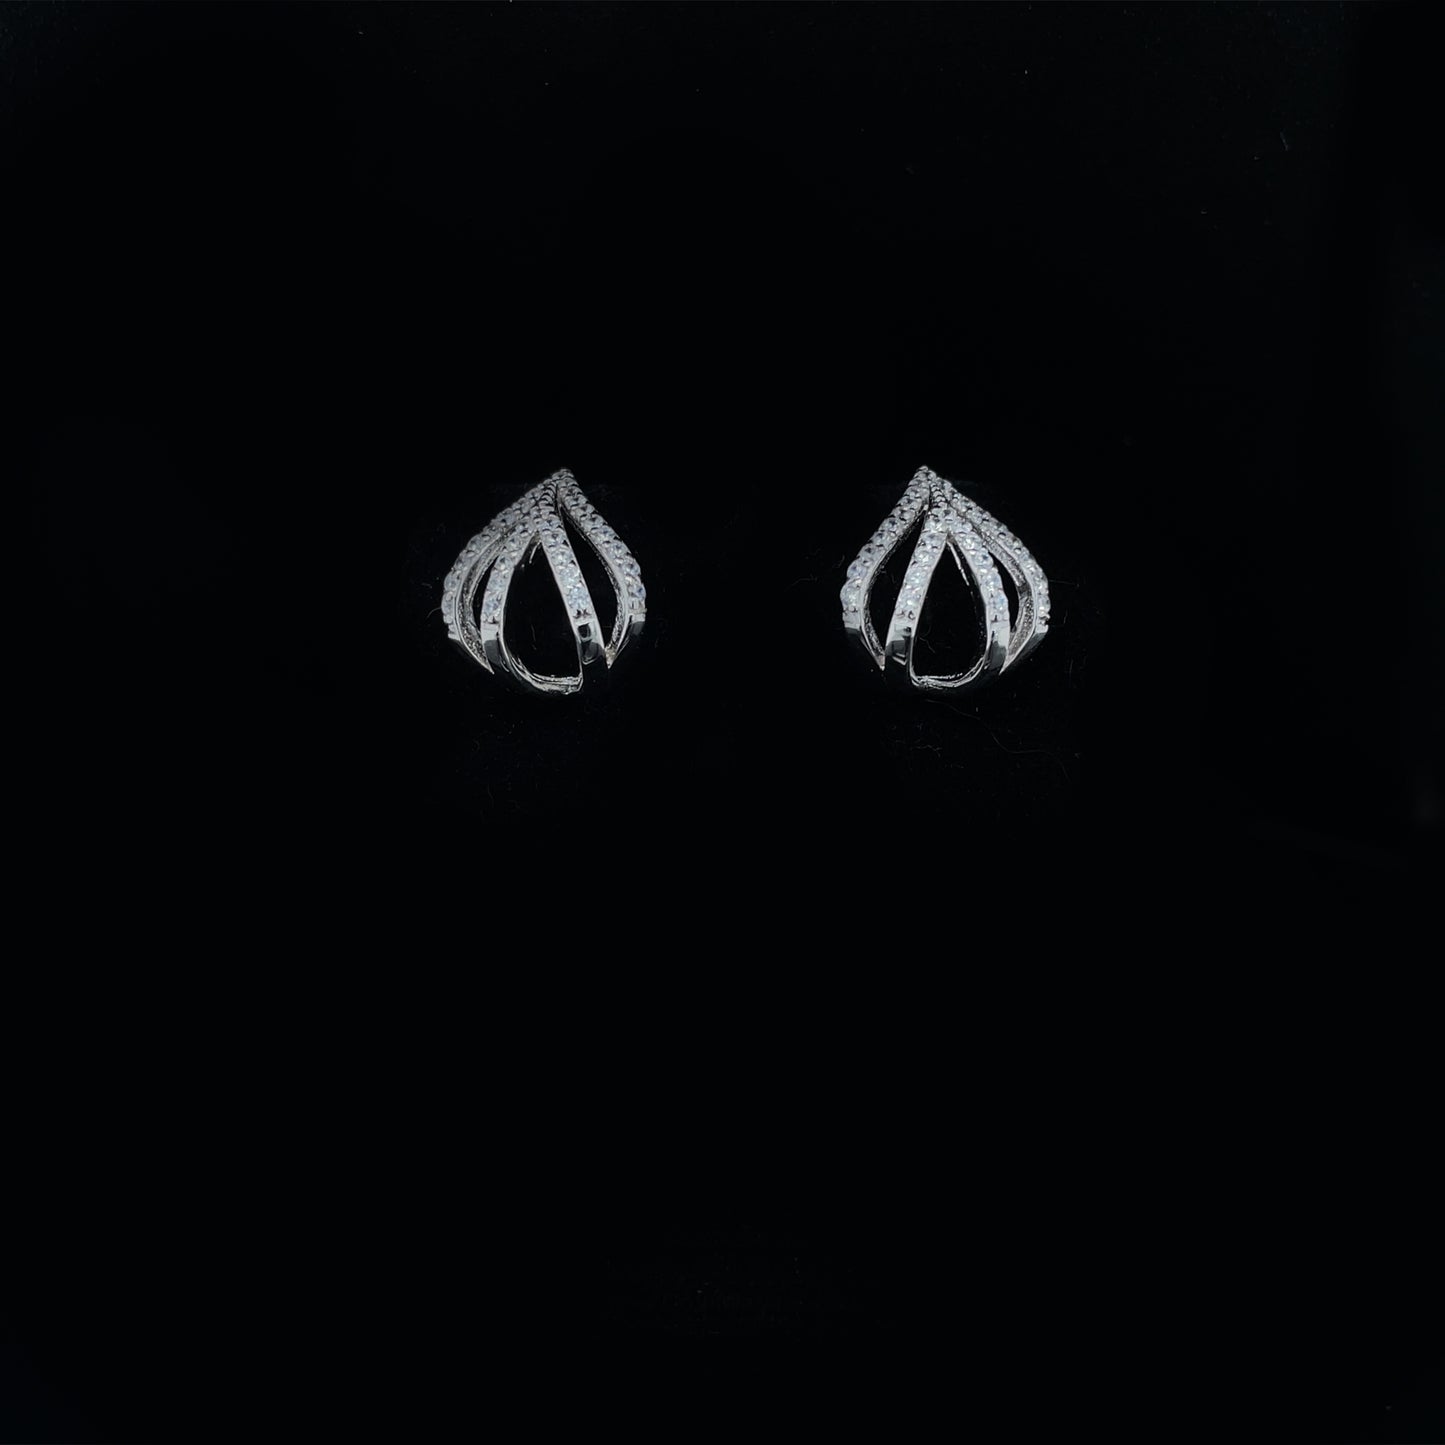 Curved Teardrop Earrings in Sterling Silver